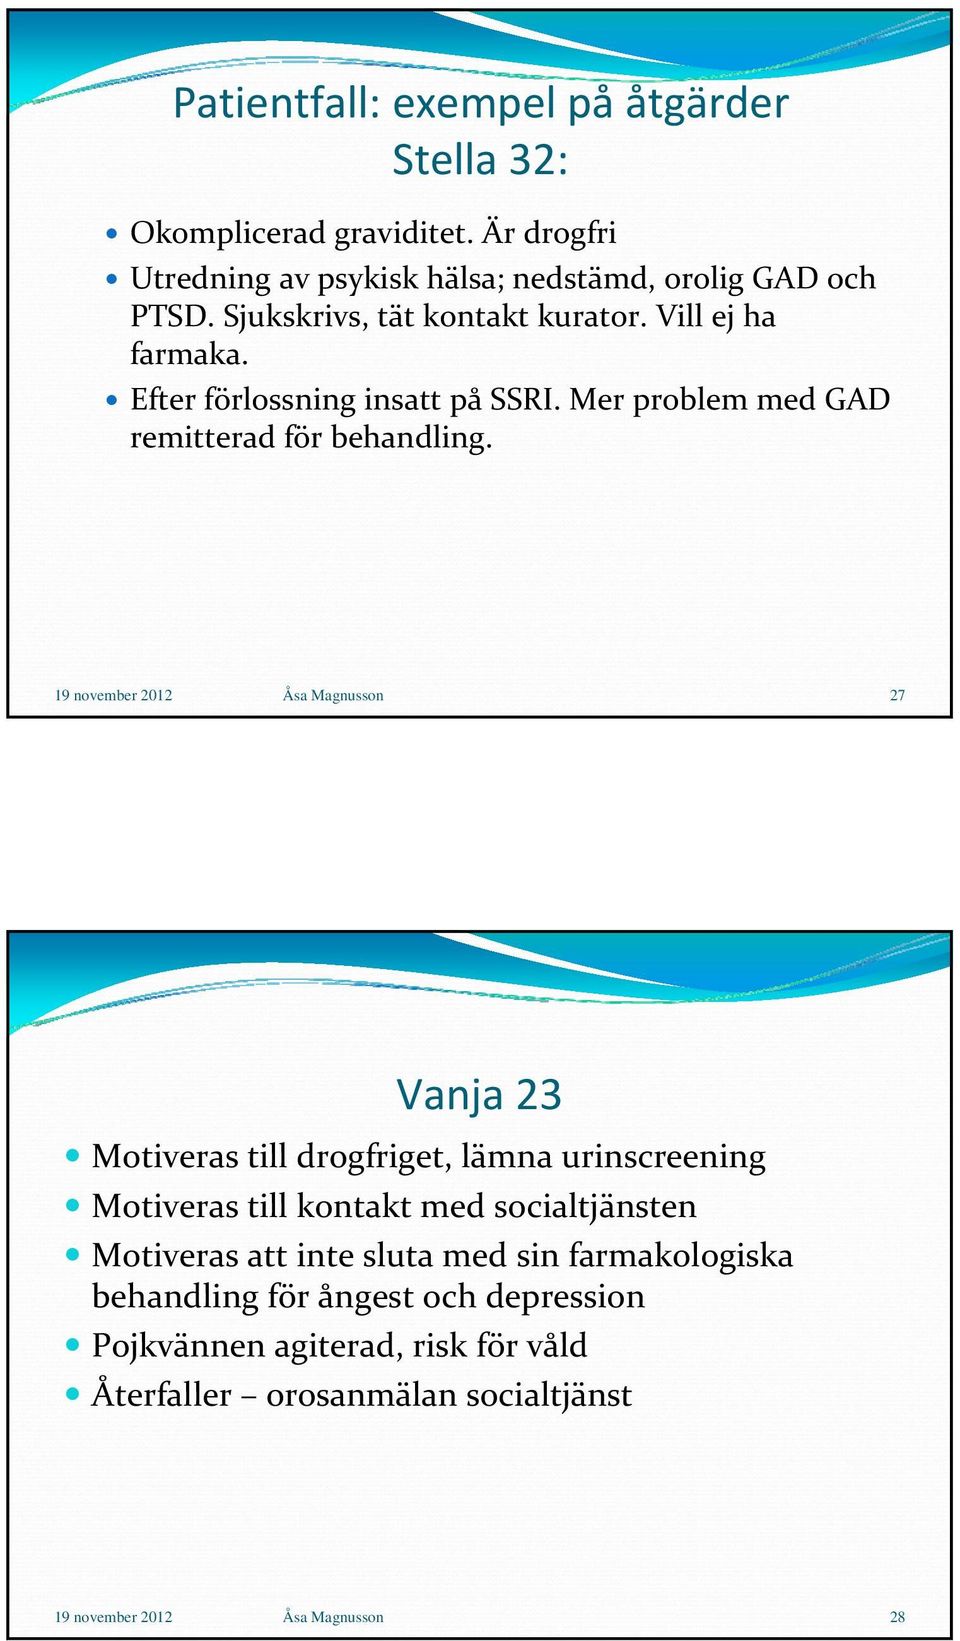 19 november 2012 Åsa Magnusson 27 Vanja 23 Motiveras till drogfriget, lämna urinscreening Motiveras till kontakt med socialtjänsten Motiveras att